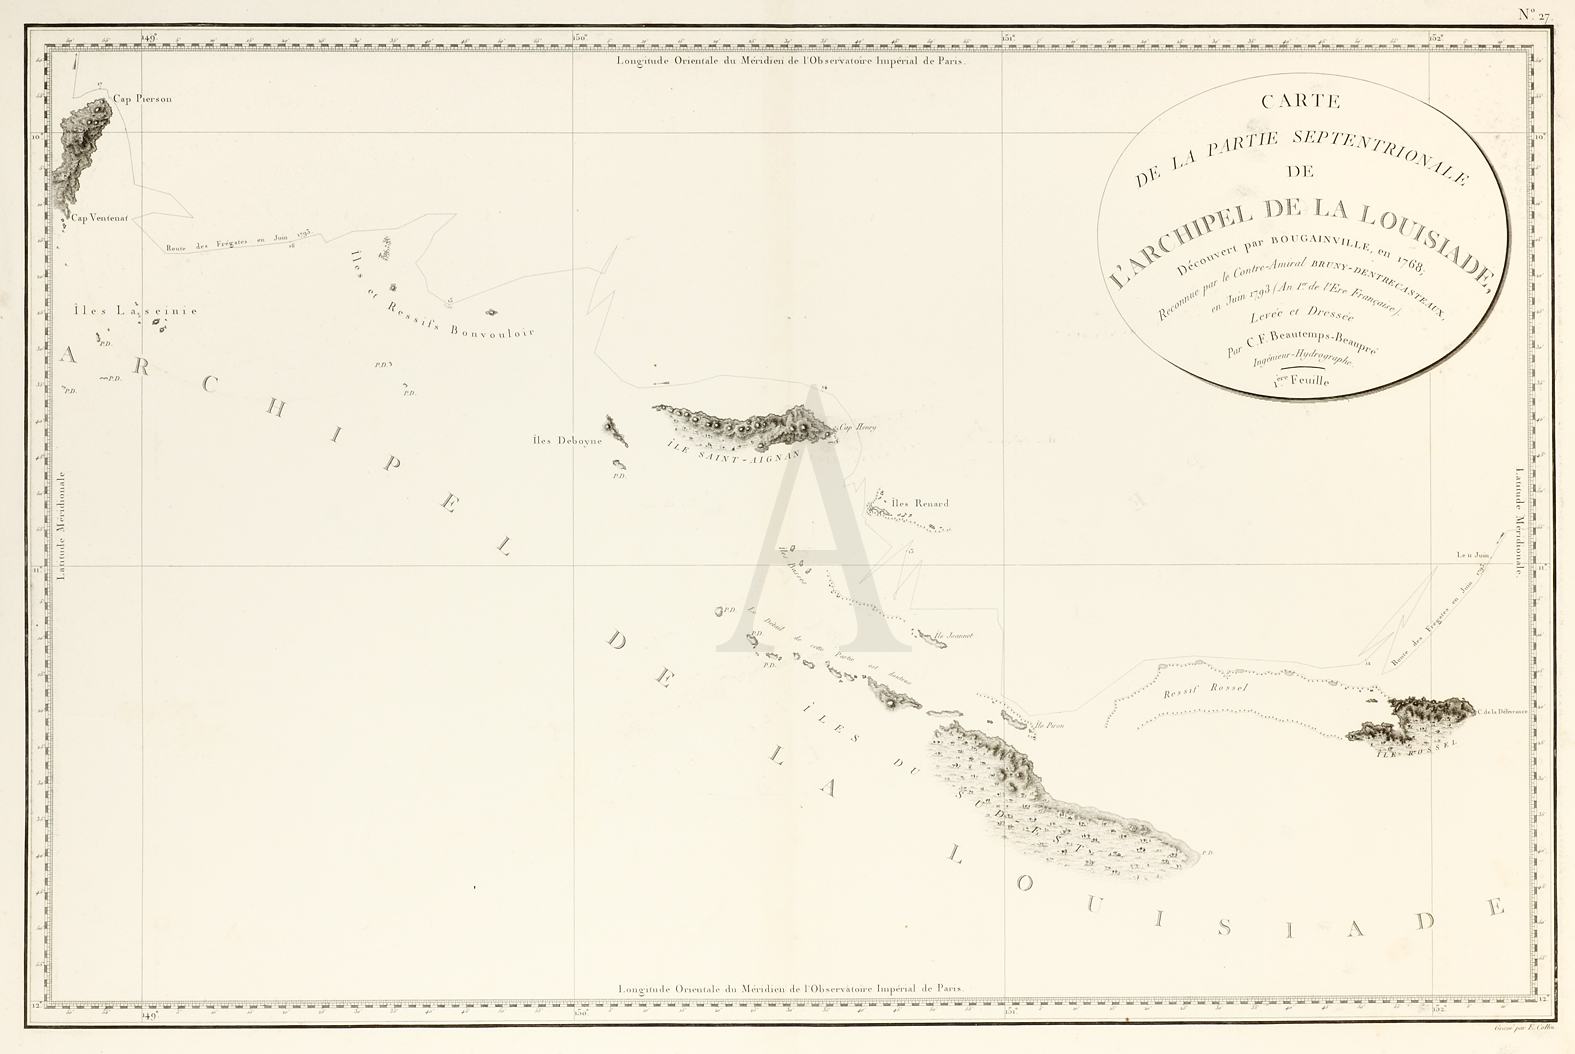 Carte de la partie septentrionale de l'archipel de la Louisiade, decouvert par Bougainville, en 1768; reconnue par le contre-amiral Bruny-Dentrecasteaux, en juin 1793 - Antique Print from 1807